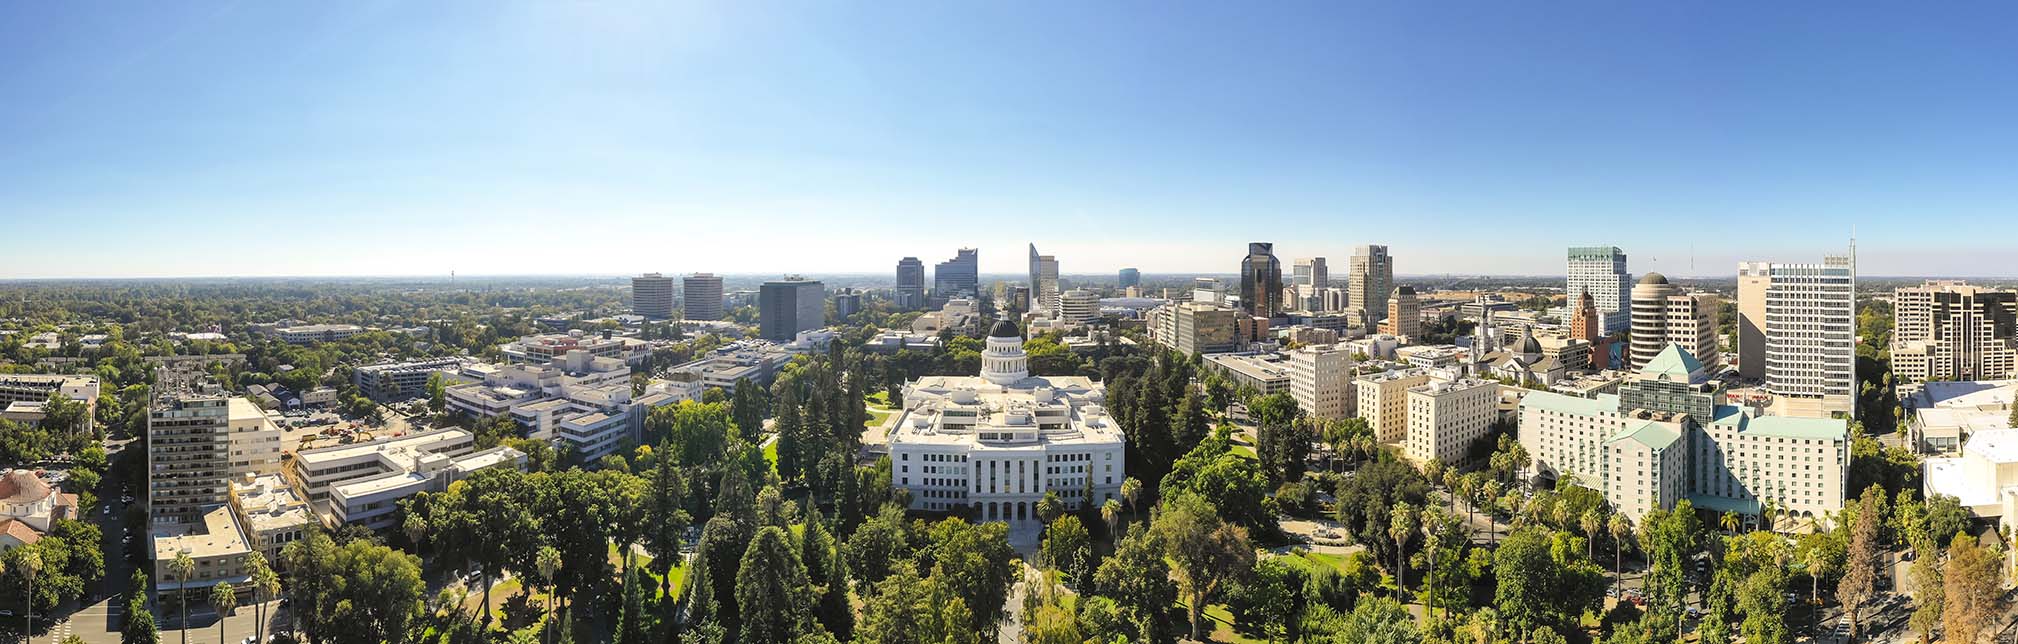 Sacramento drone services